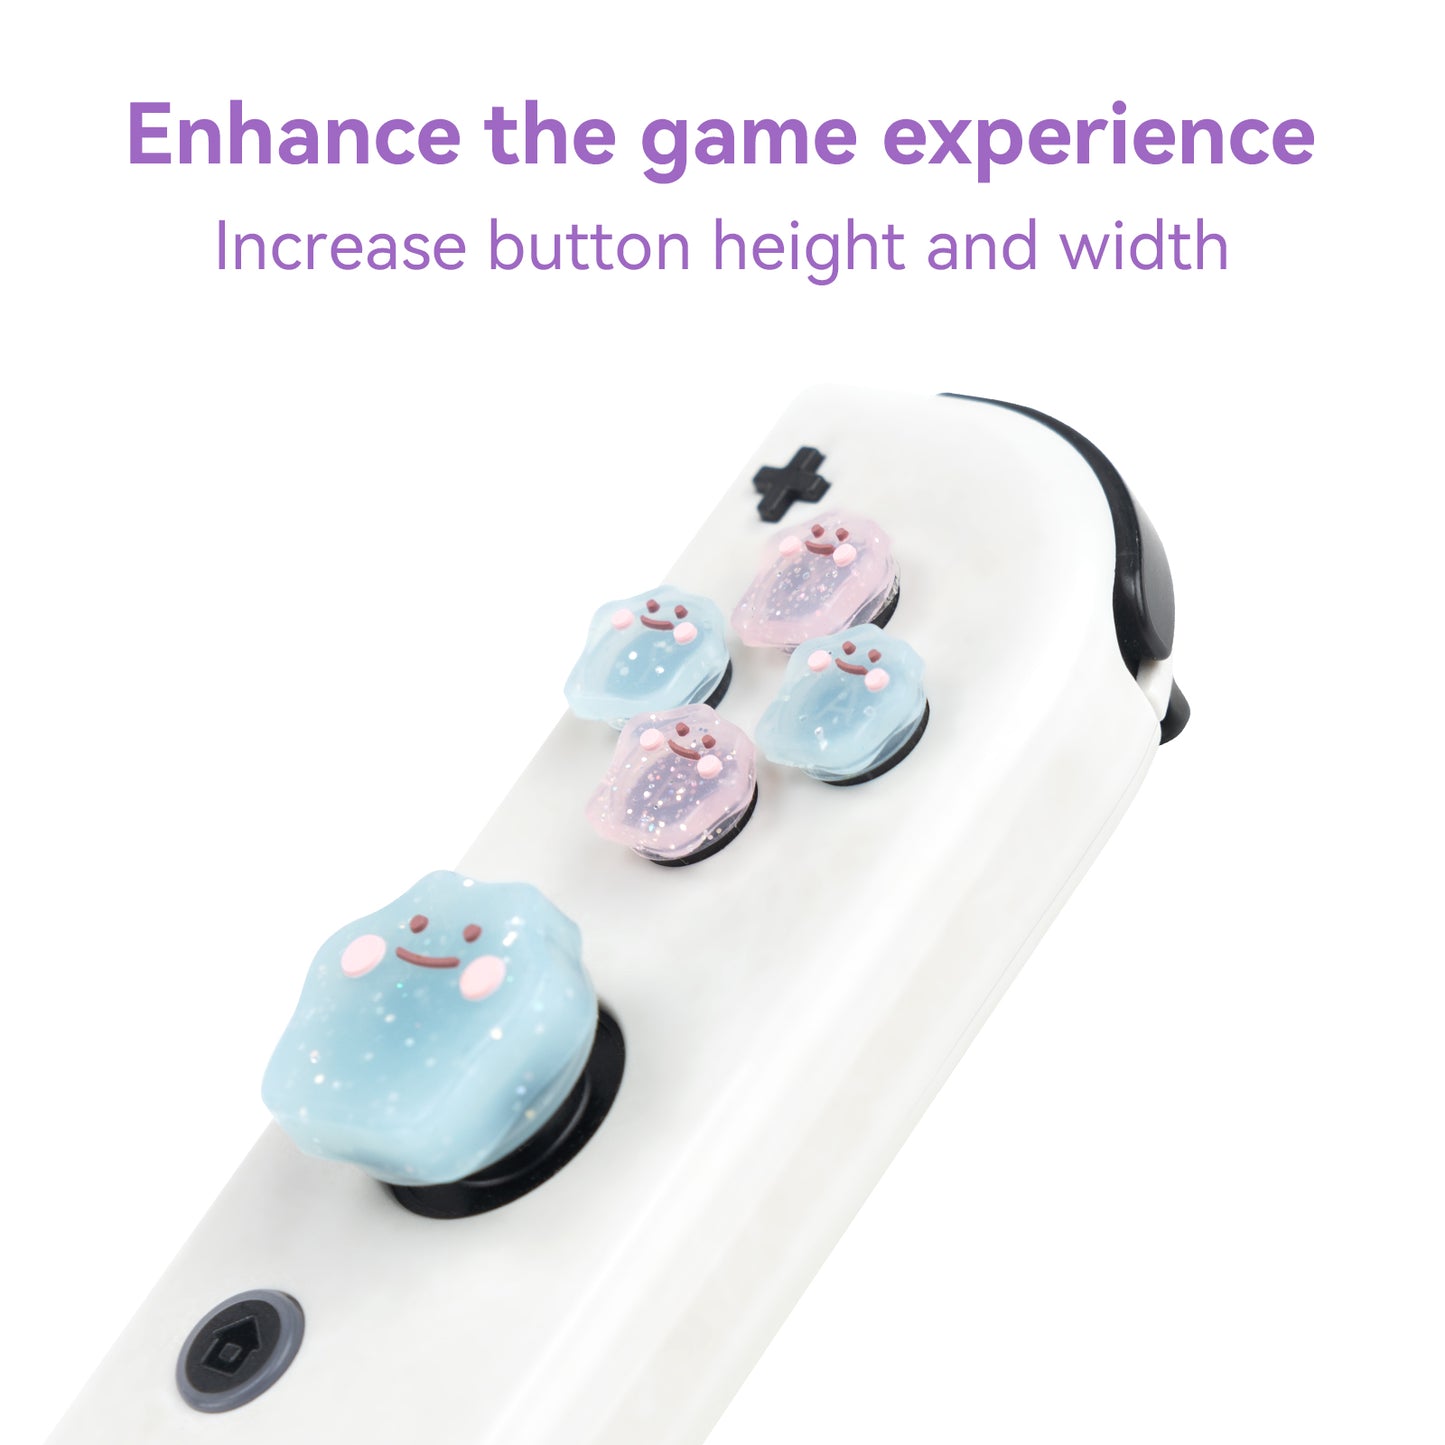 WISHAVEN クロス D パッド ボタン キャップ 発光シリコン親指グリップ セット、ABXY ボタン ステッカー ジョイスティック カバー キャップ Nintendo Switch/OLED コントローラーと互換性あり (同上)